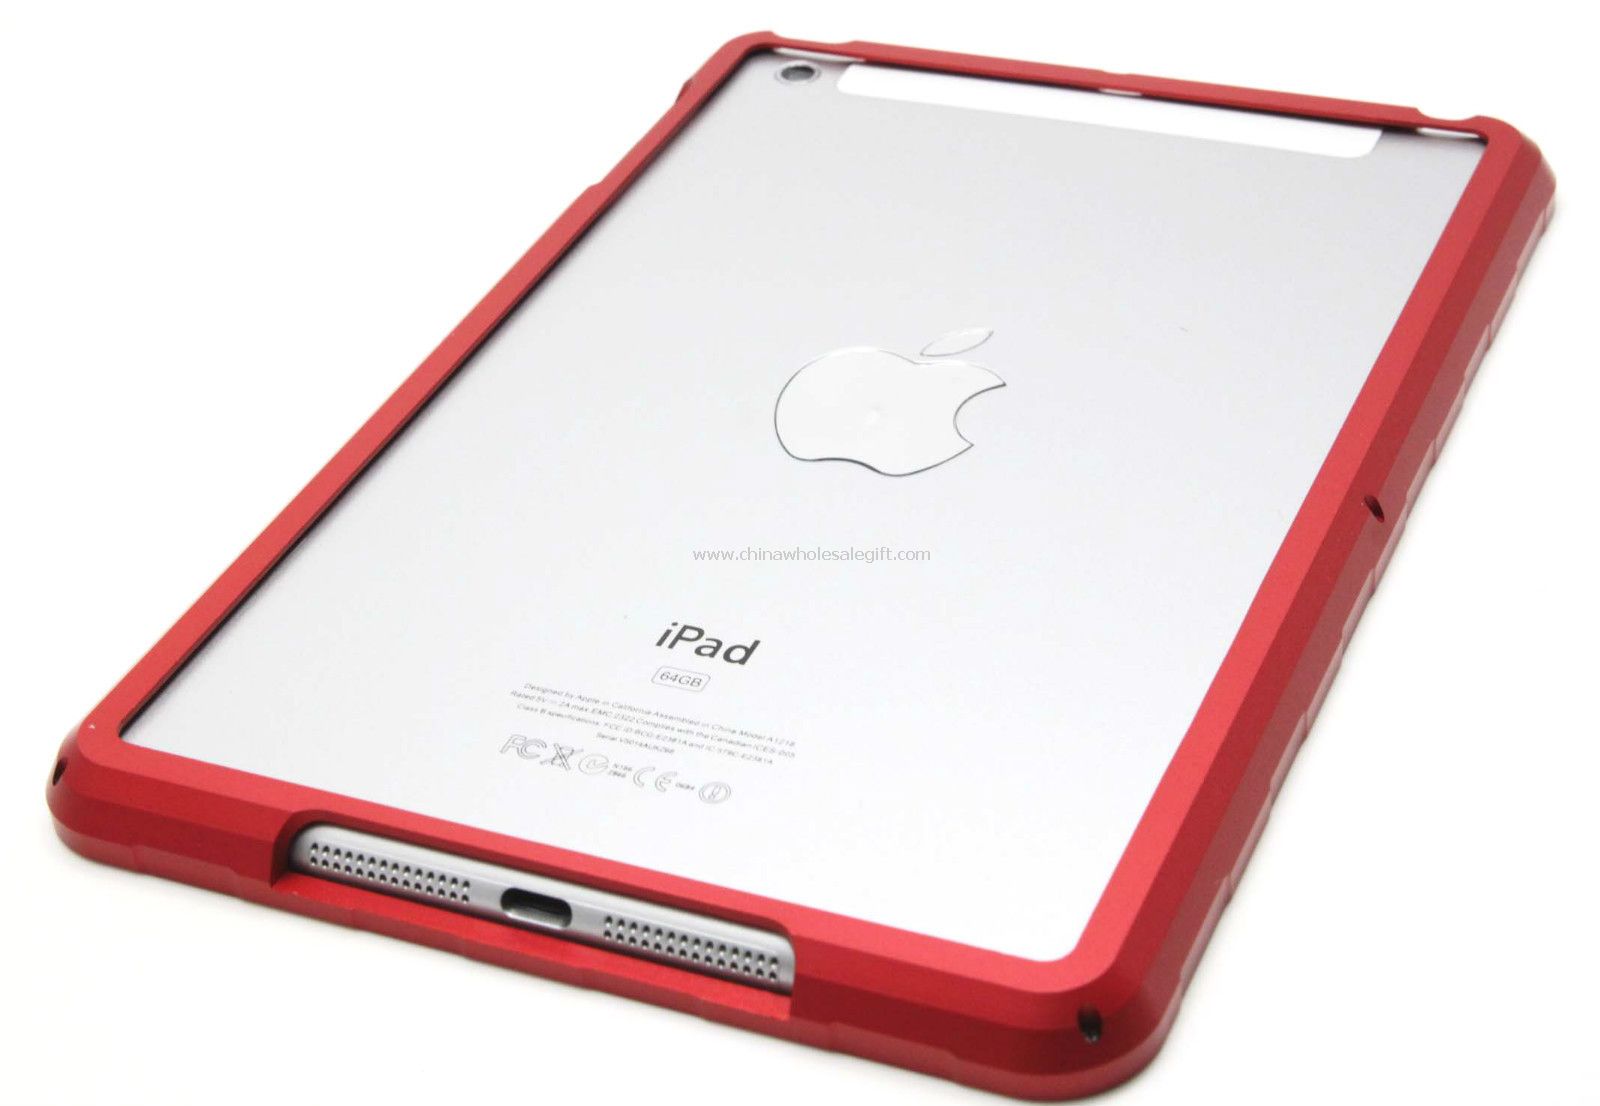 Premium Aluminium Metal Alloy Bumper Hard Case for iPad Mini